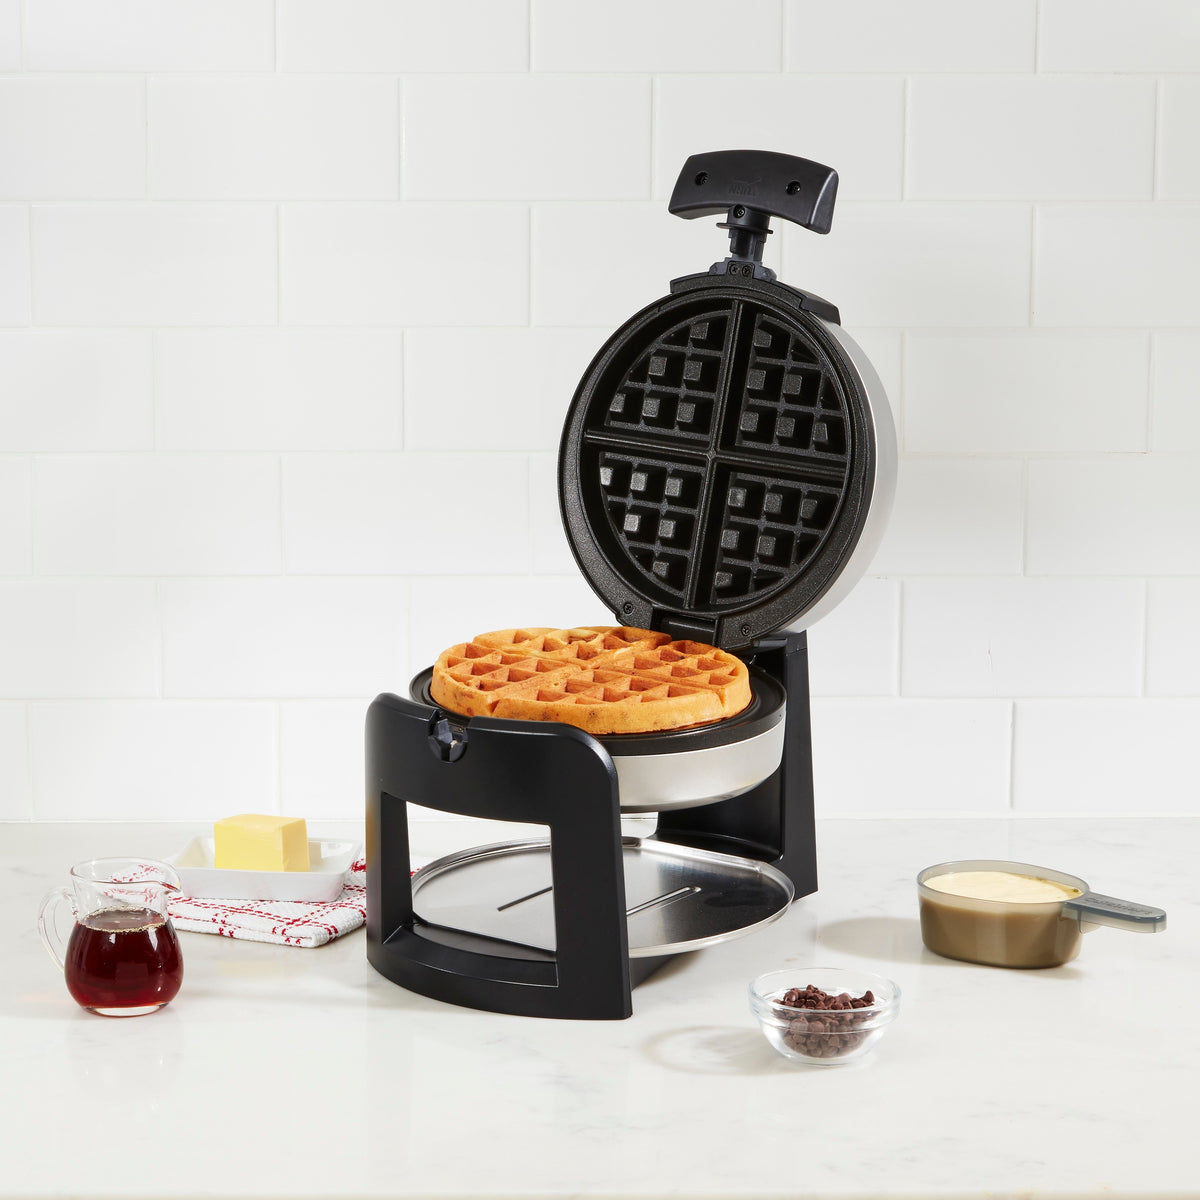 Black + Decker Double Flip Waffle Maker 